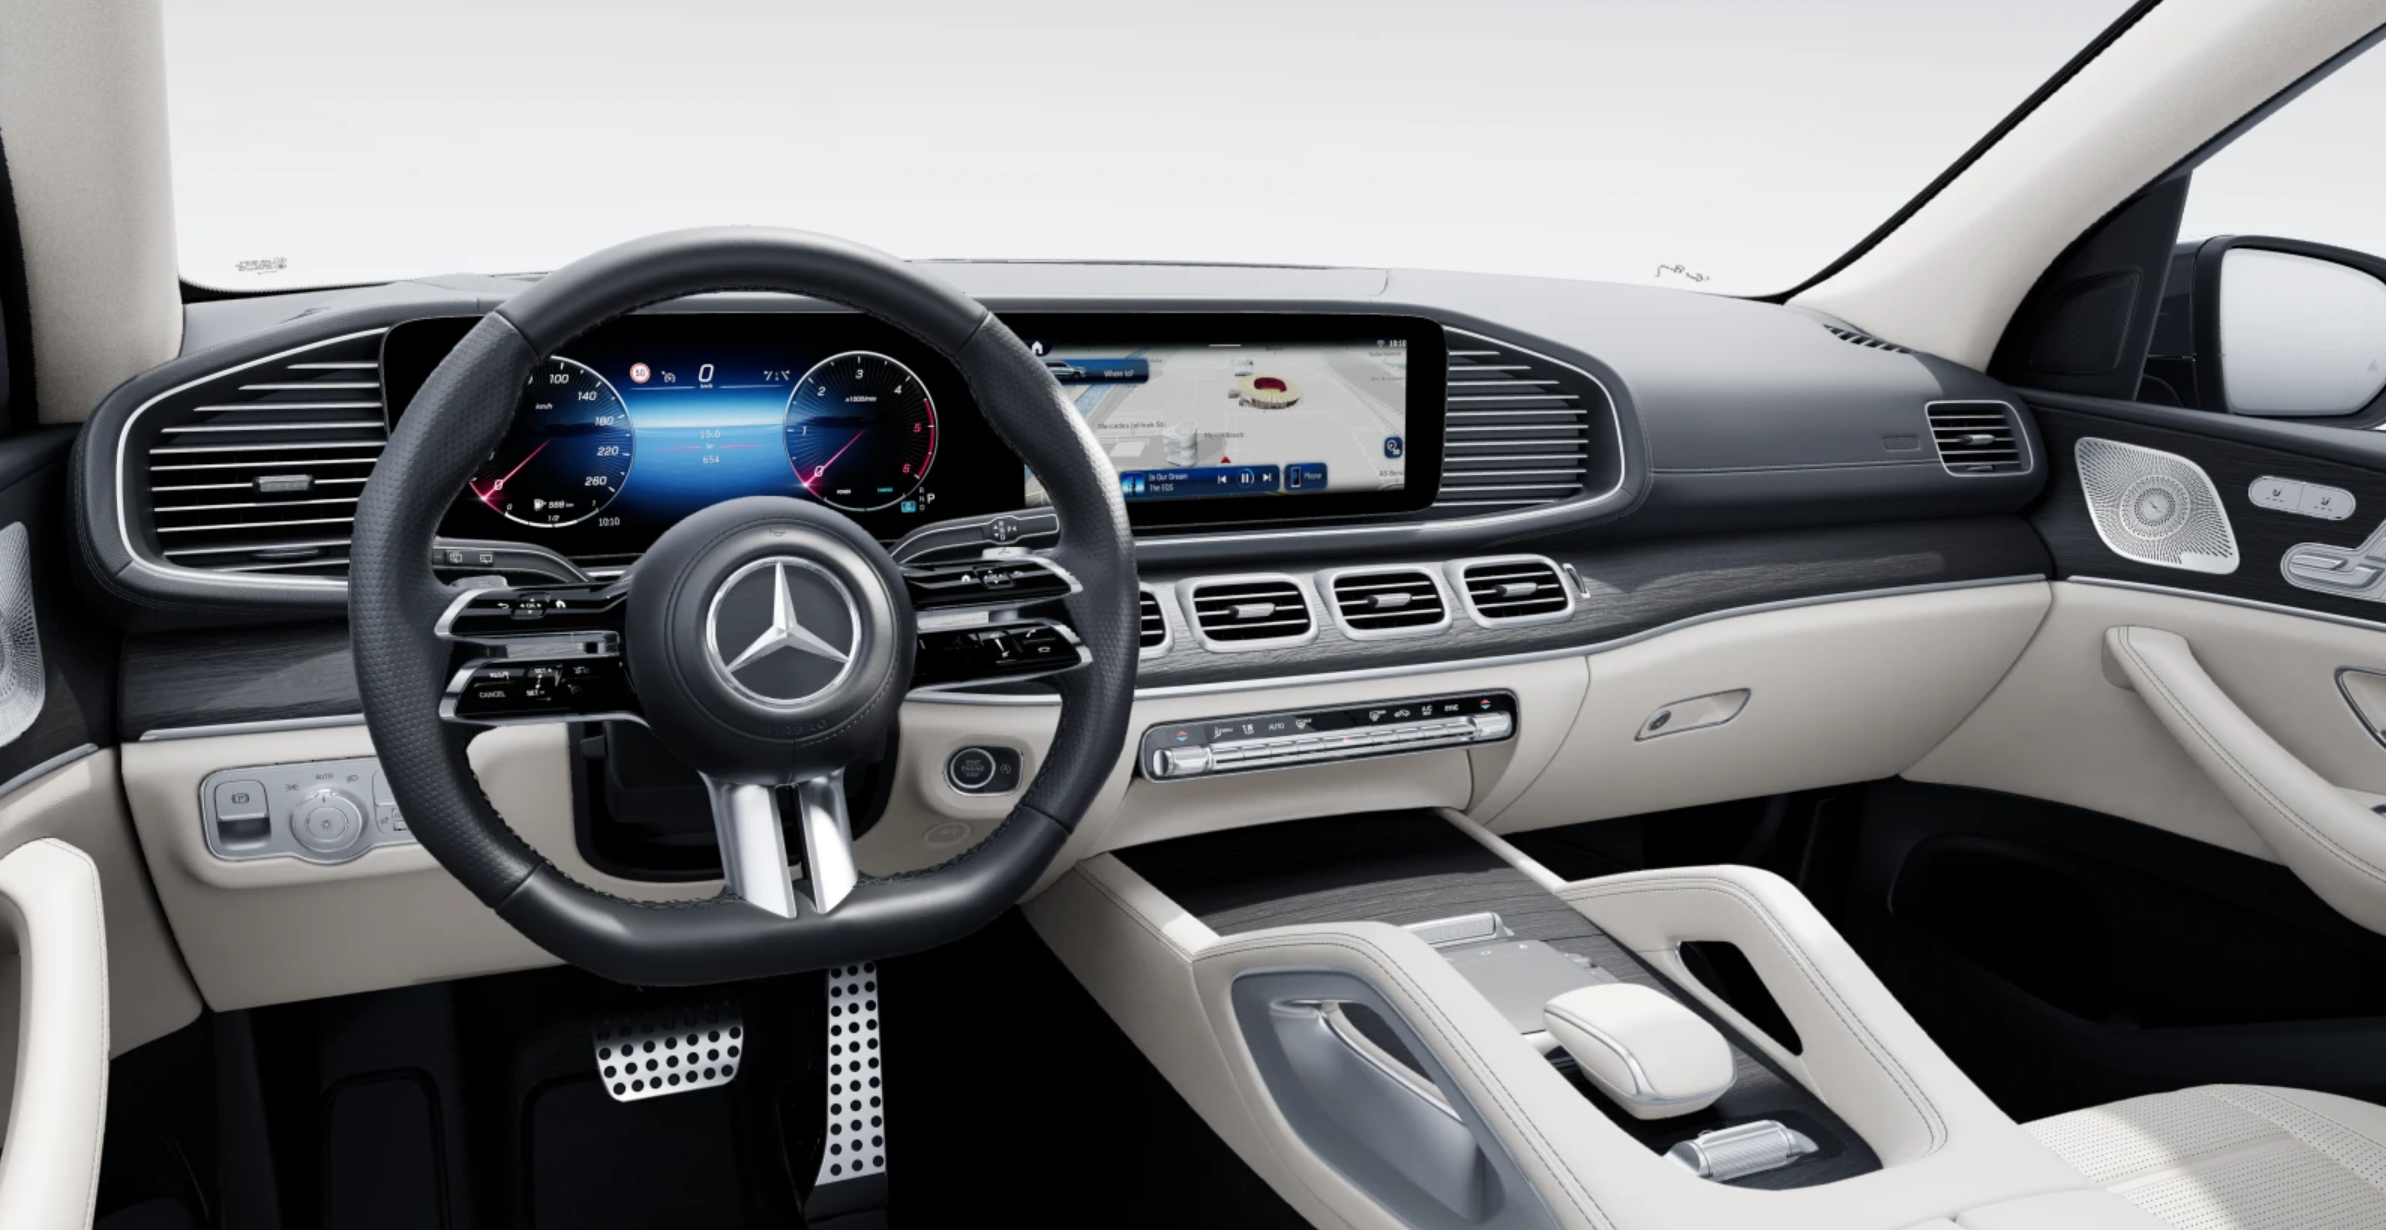 Mercedes GLS 350d 4matic AMG | nový facelift | k objednání do výroby | nejmodernější velké naftové SUV | luxusní béžový interiér | nové české auto skladem  | nafta 333 koní | perfektní výbava | nákup online na AUTOiBUY.com